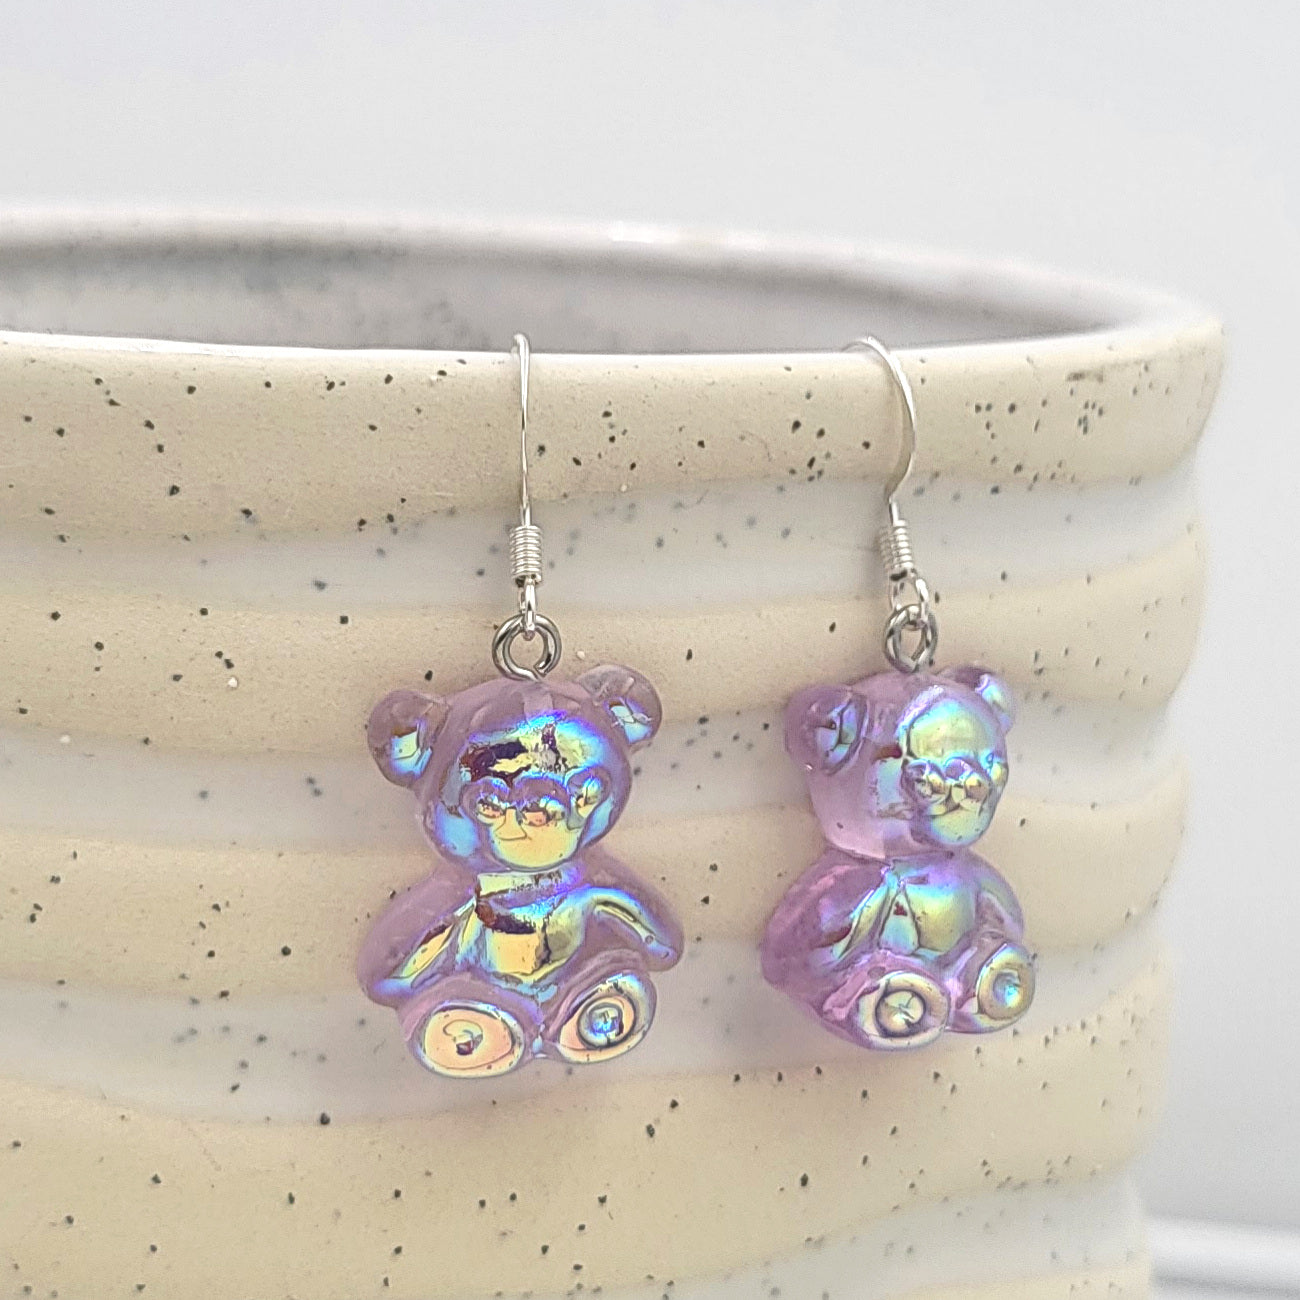 BESHEEK Silvertone and Purple Resin Gummy Bear Dangle Earrings | Hypoallergenic Boho Kitchsy Artistic Funky Cute Style Fashion Earrings